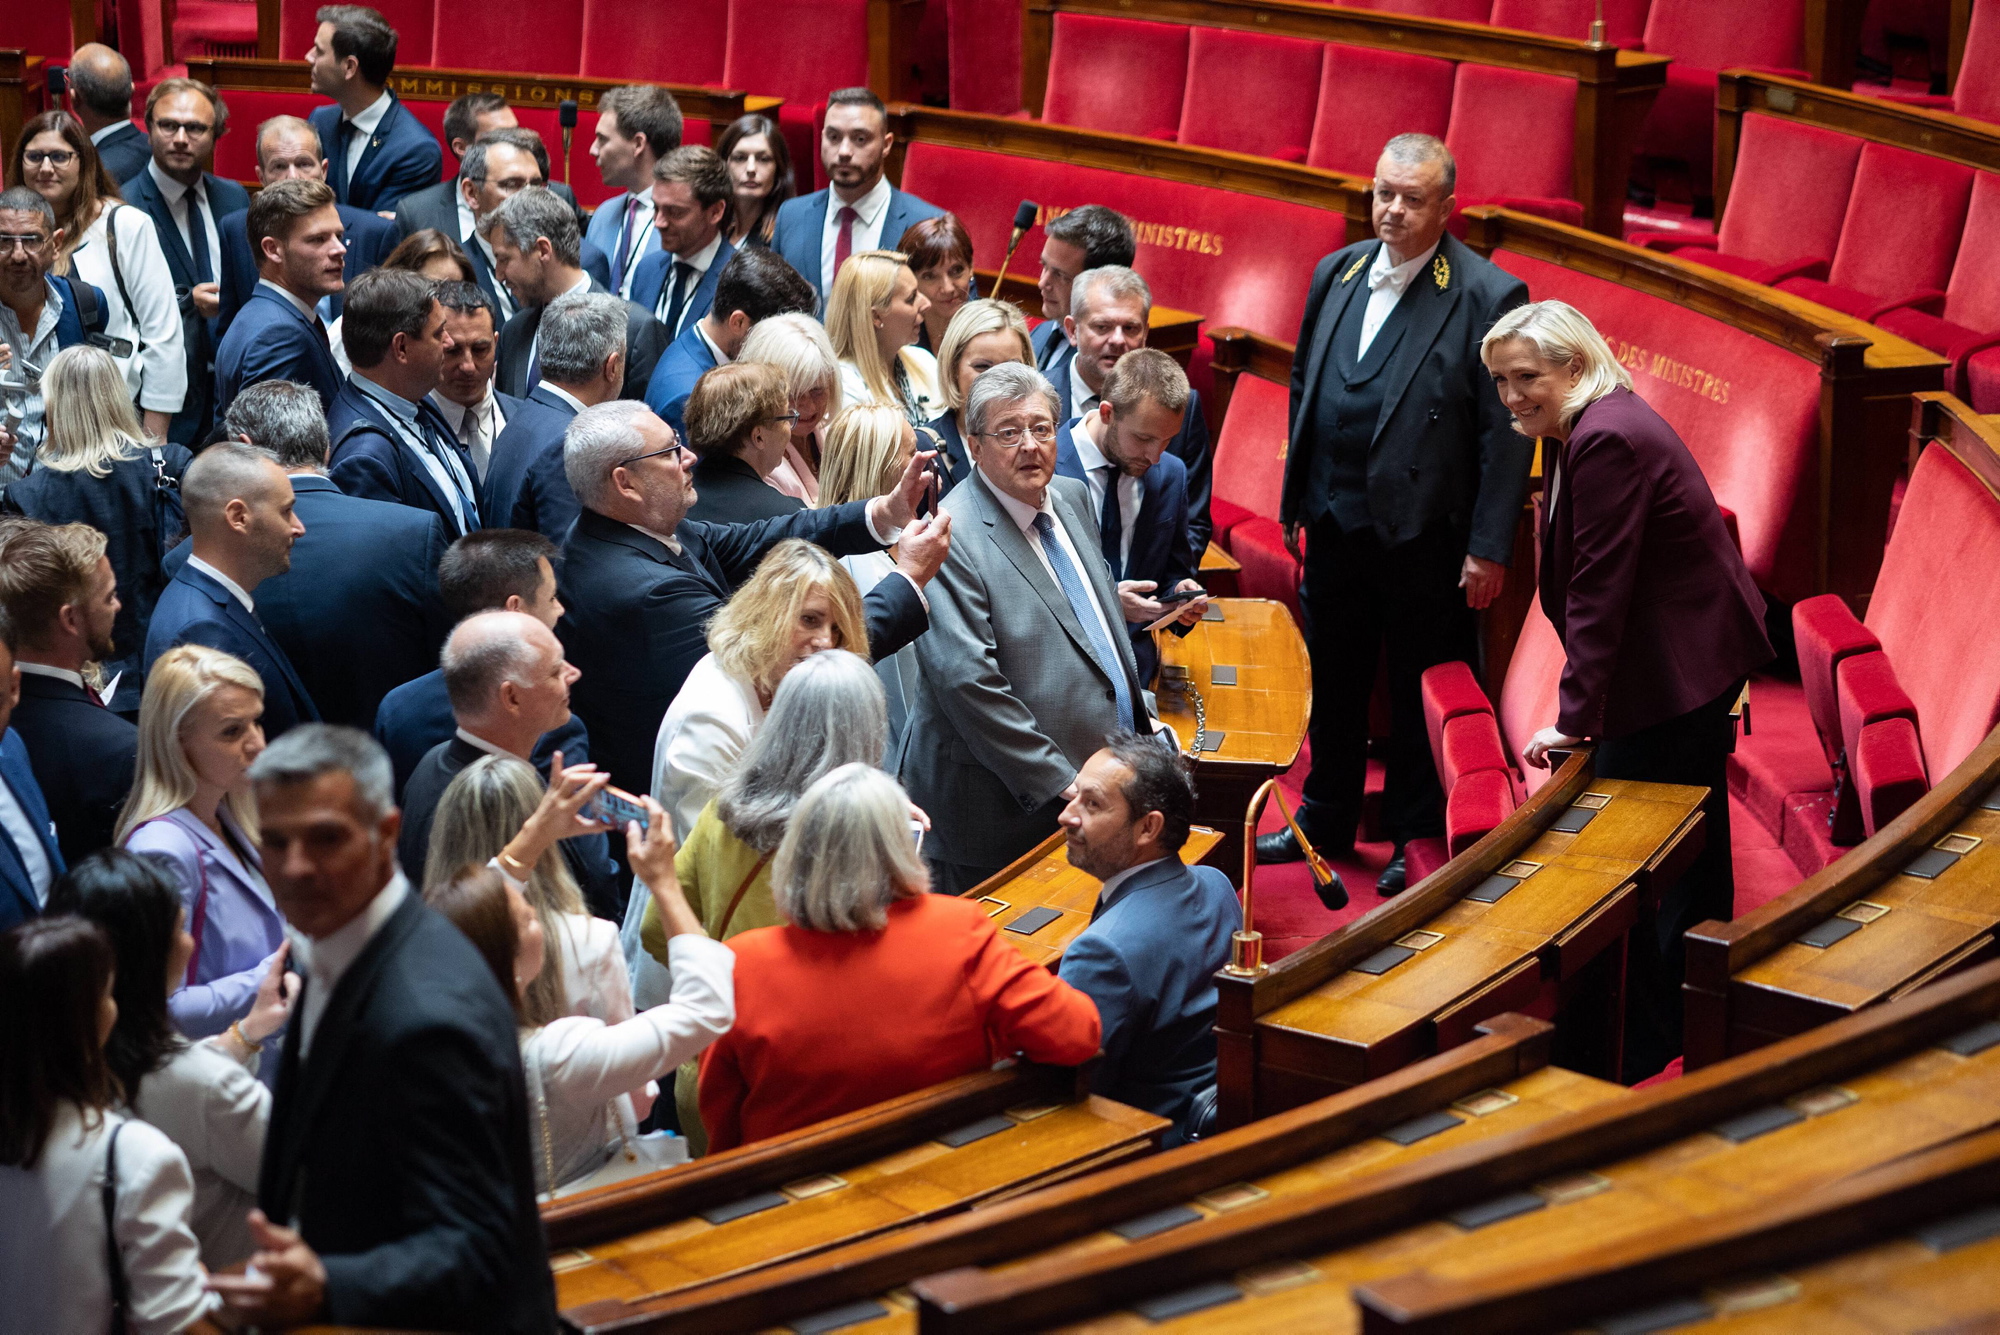 Jean-Luc Mélenchon z reprezentacją lewicowej koalicji Nupes w Zgromadzeniu Narodowym, Paryż, 21 czerwca 2022 r.